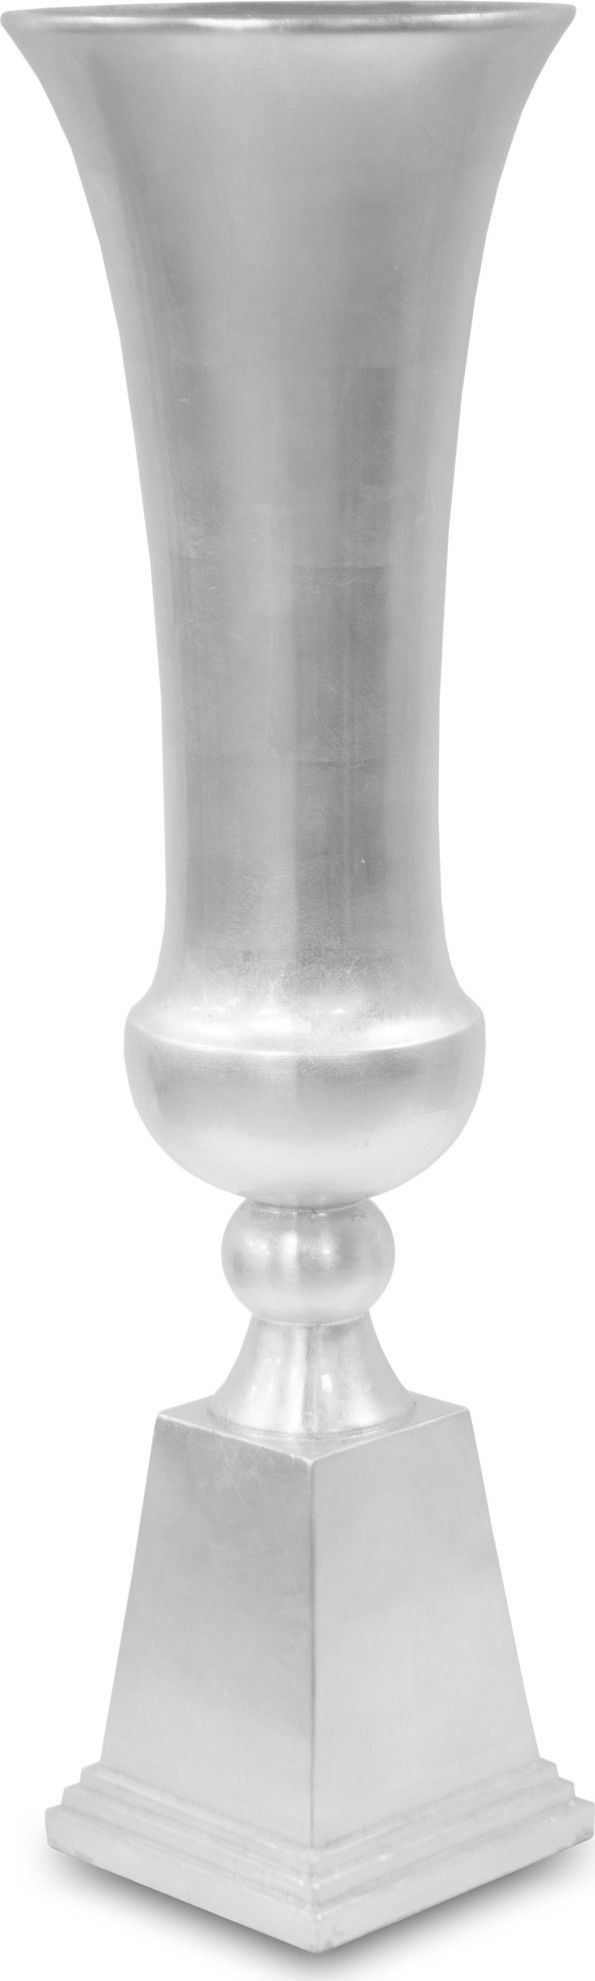 Dekorační stříbrná váza 116372 Mdum - M DUM.cz